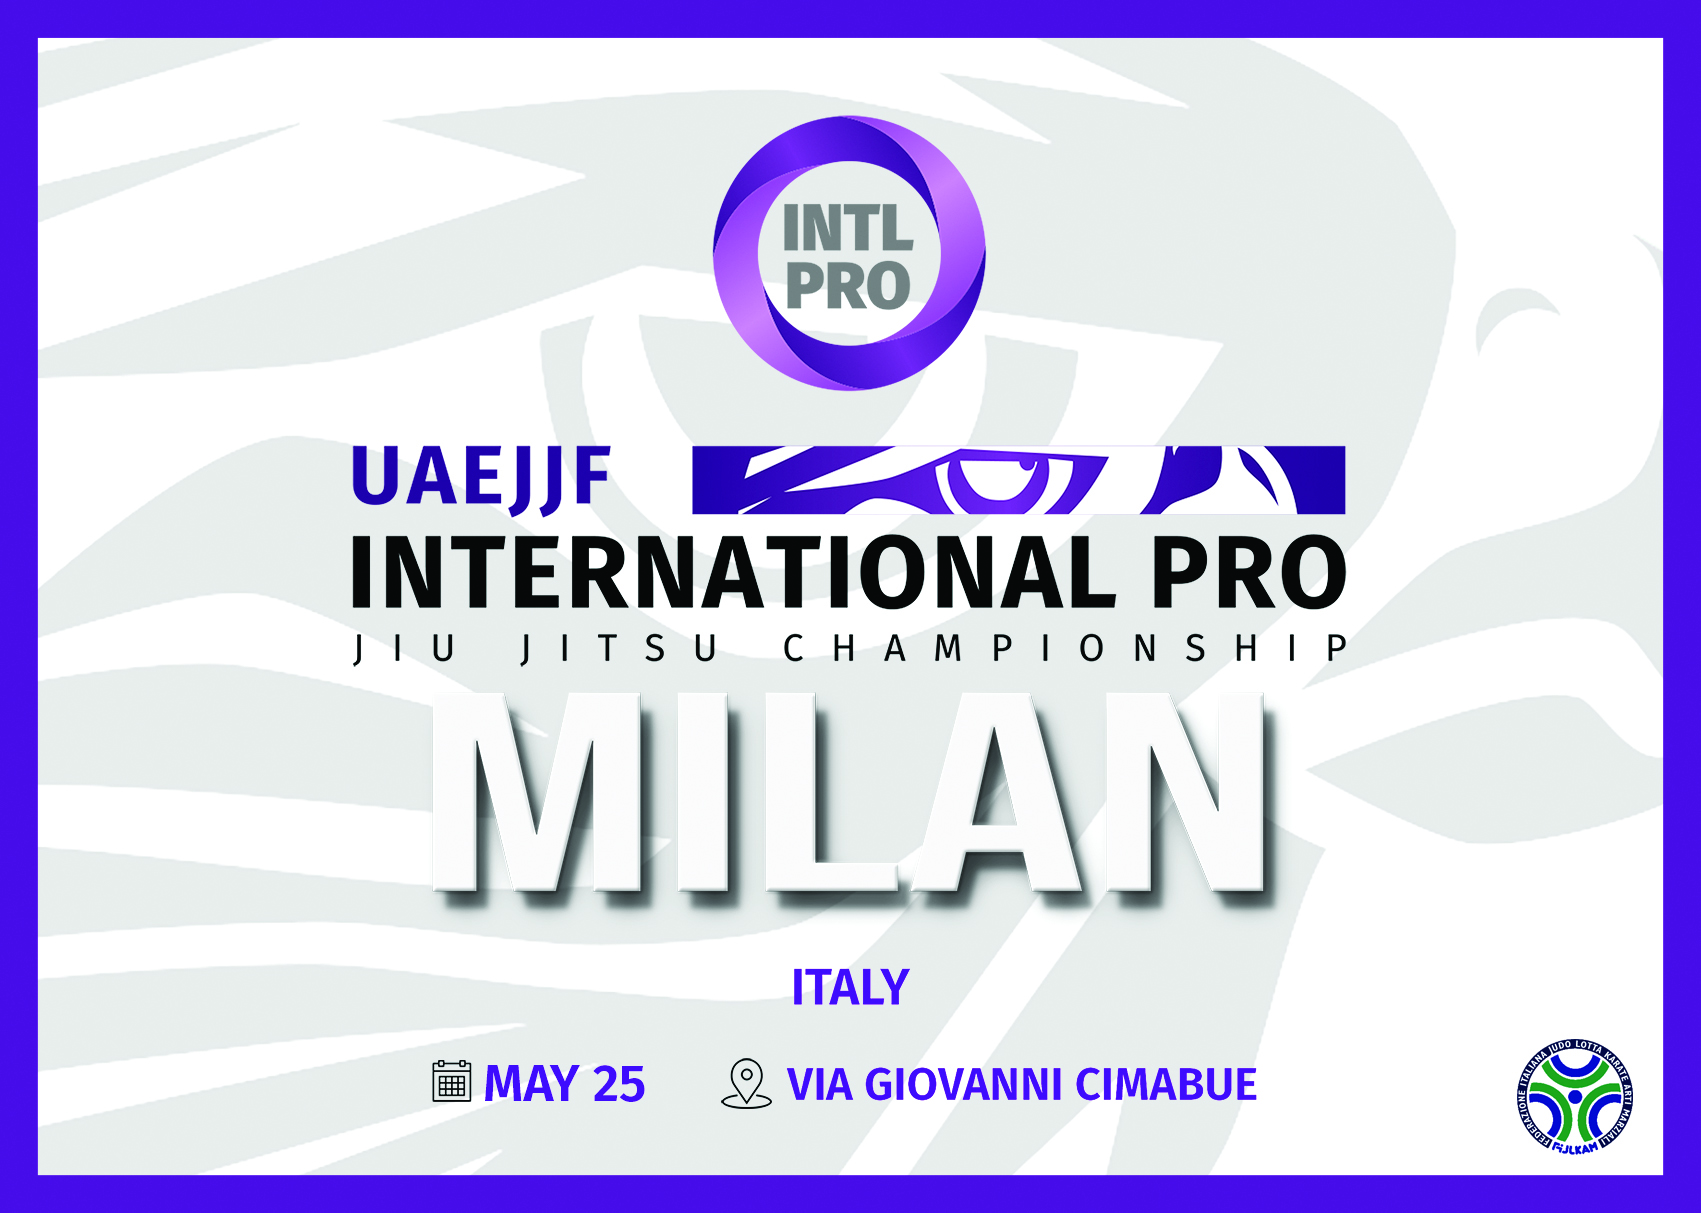 MILAN INTERNATIONAL PRO 2019